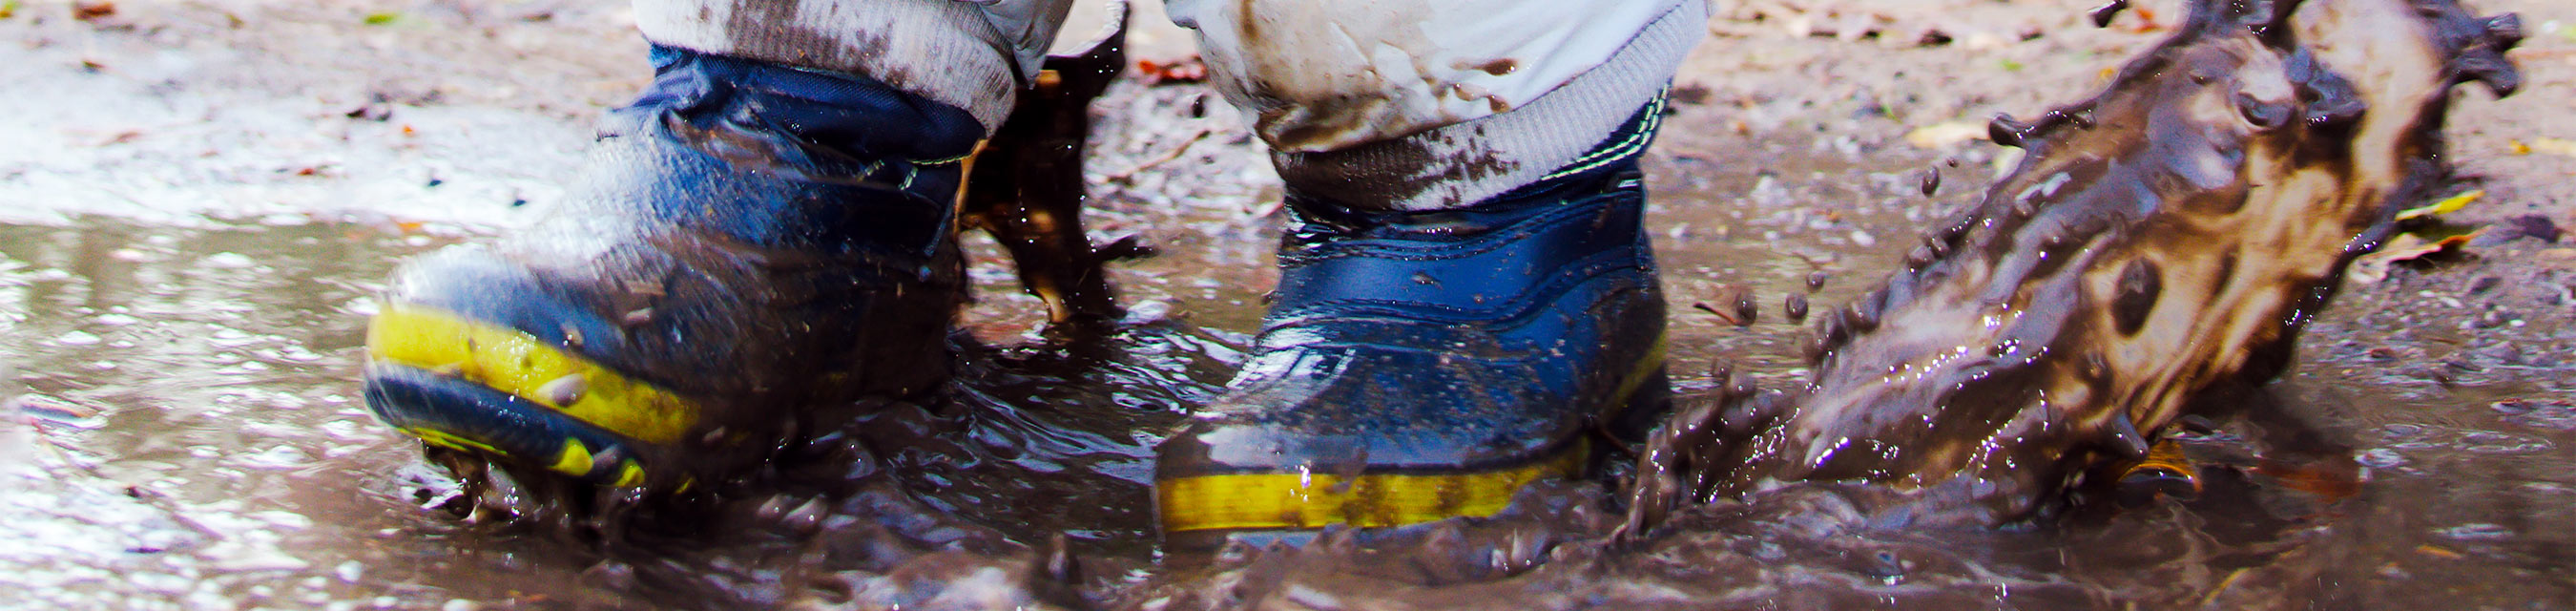 Ett barn iförd stövlar och overall leker i en vattenpöl.